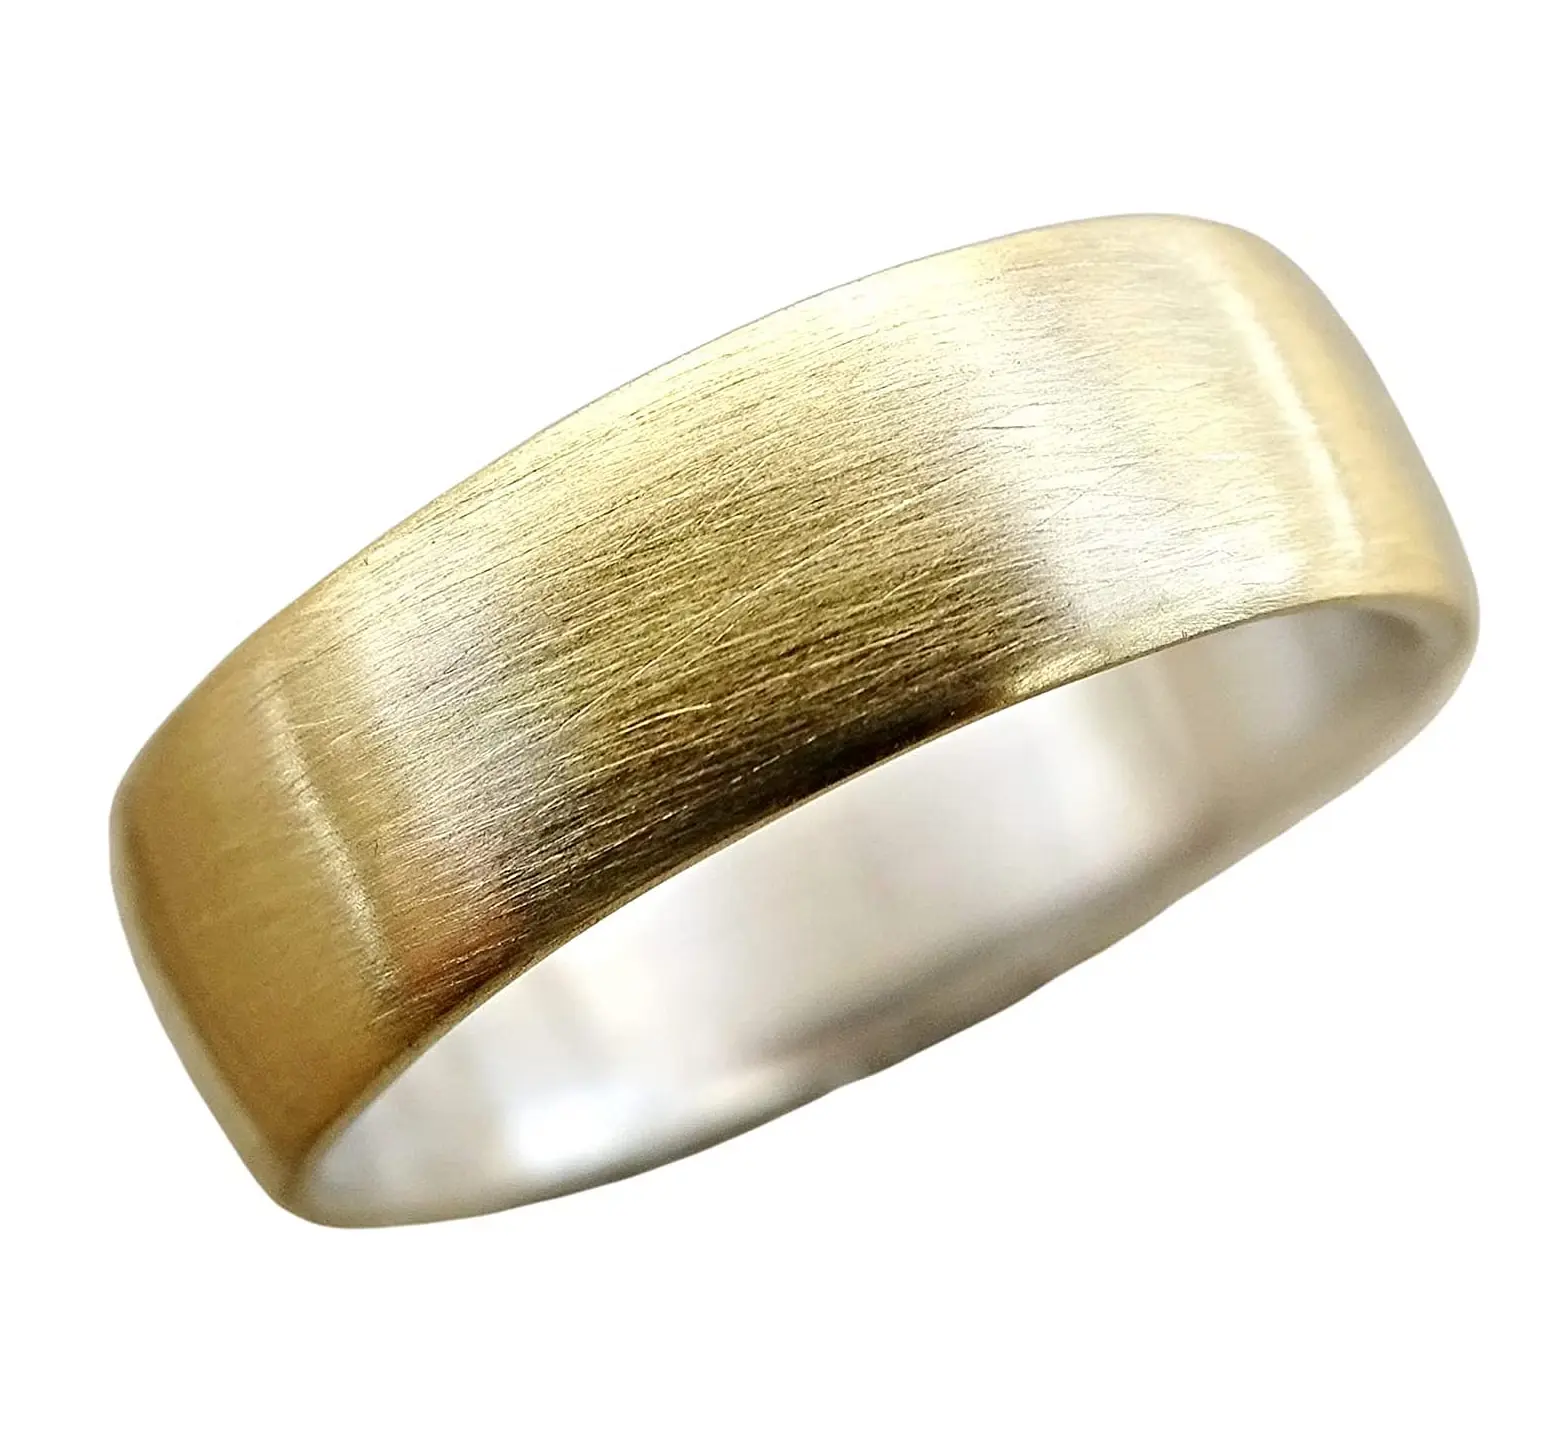 Einfacher Messing ring Kreis runder massiver Messing ring Handwerk bester Qualität modischer goldener Messing ring